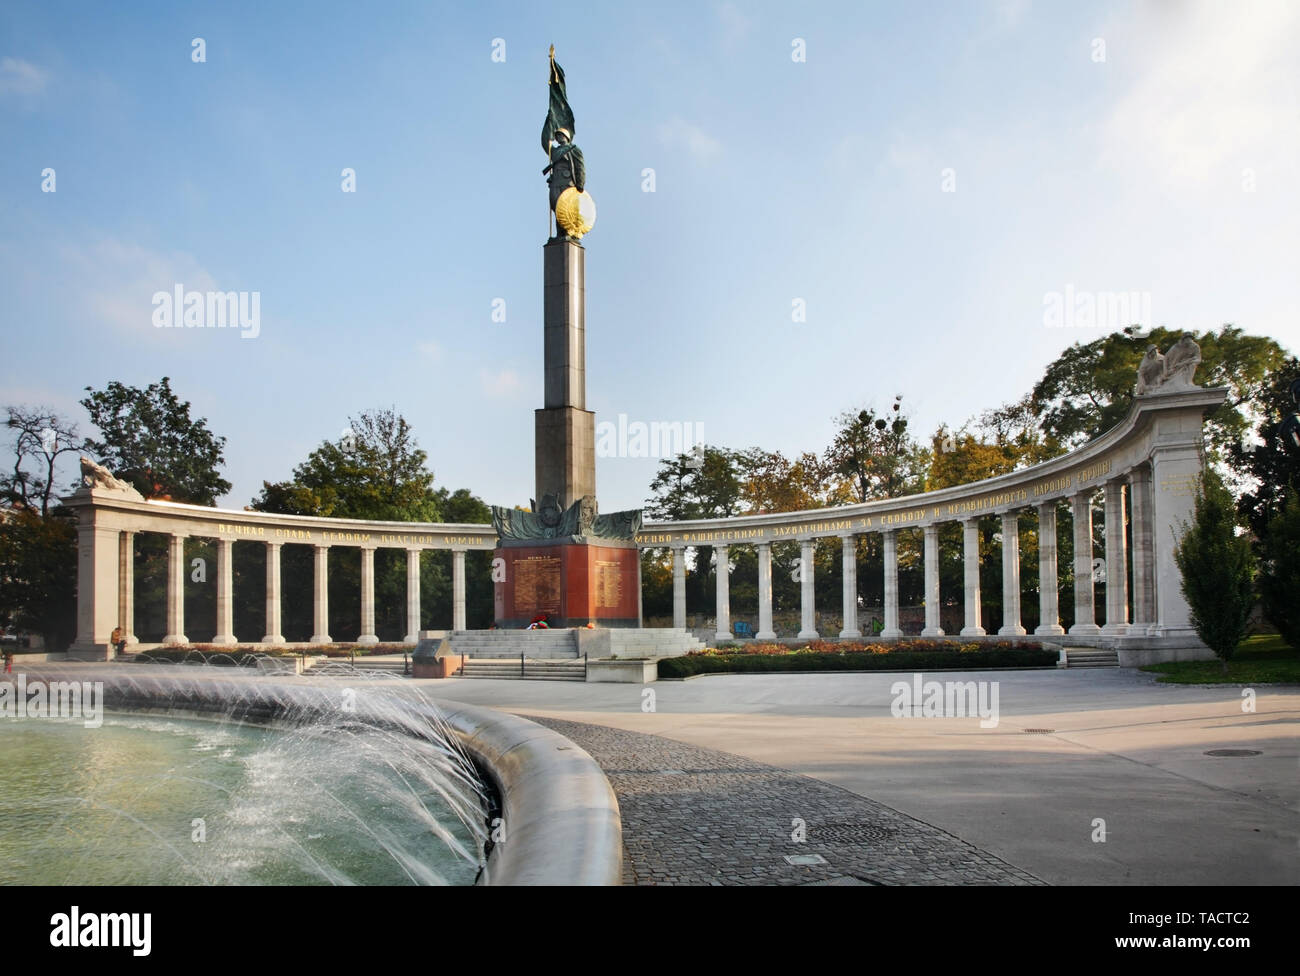 Soviet War Memorial on Schwarzenbergplatz square in Vienna. Austria Stock Photo